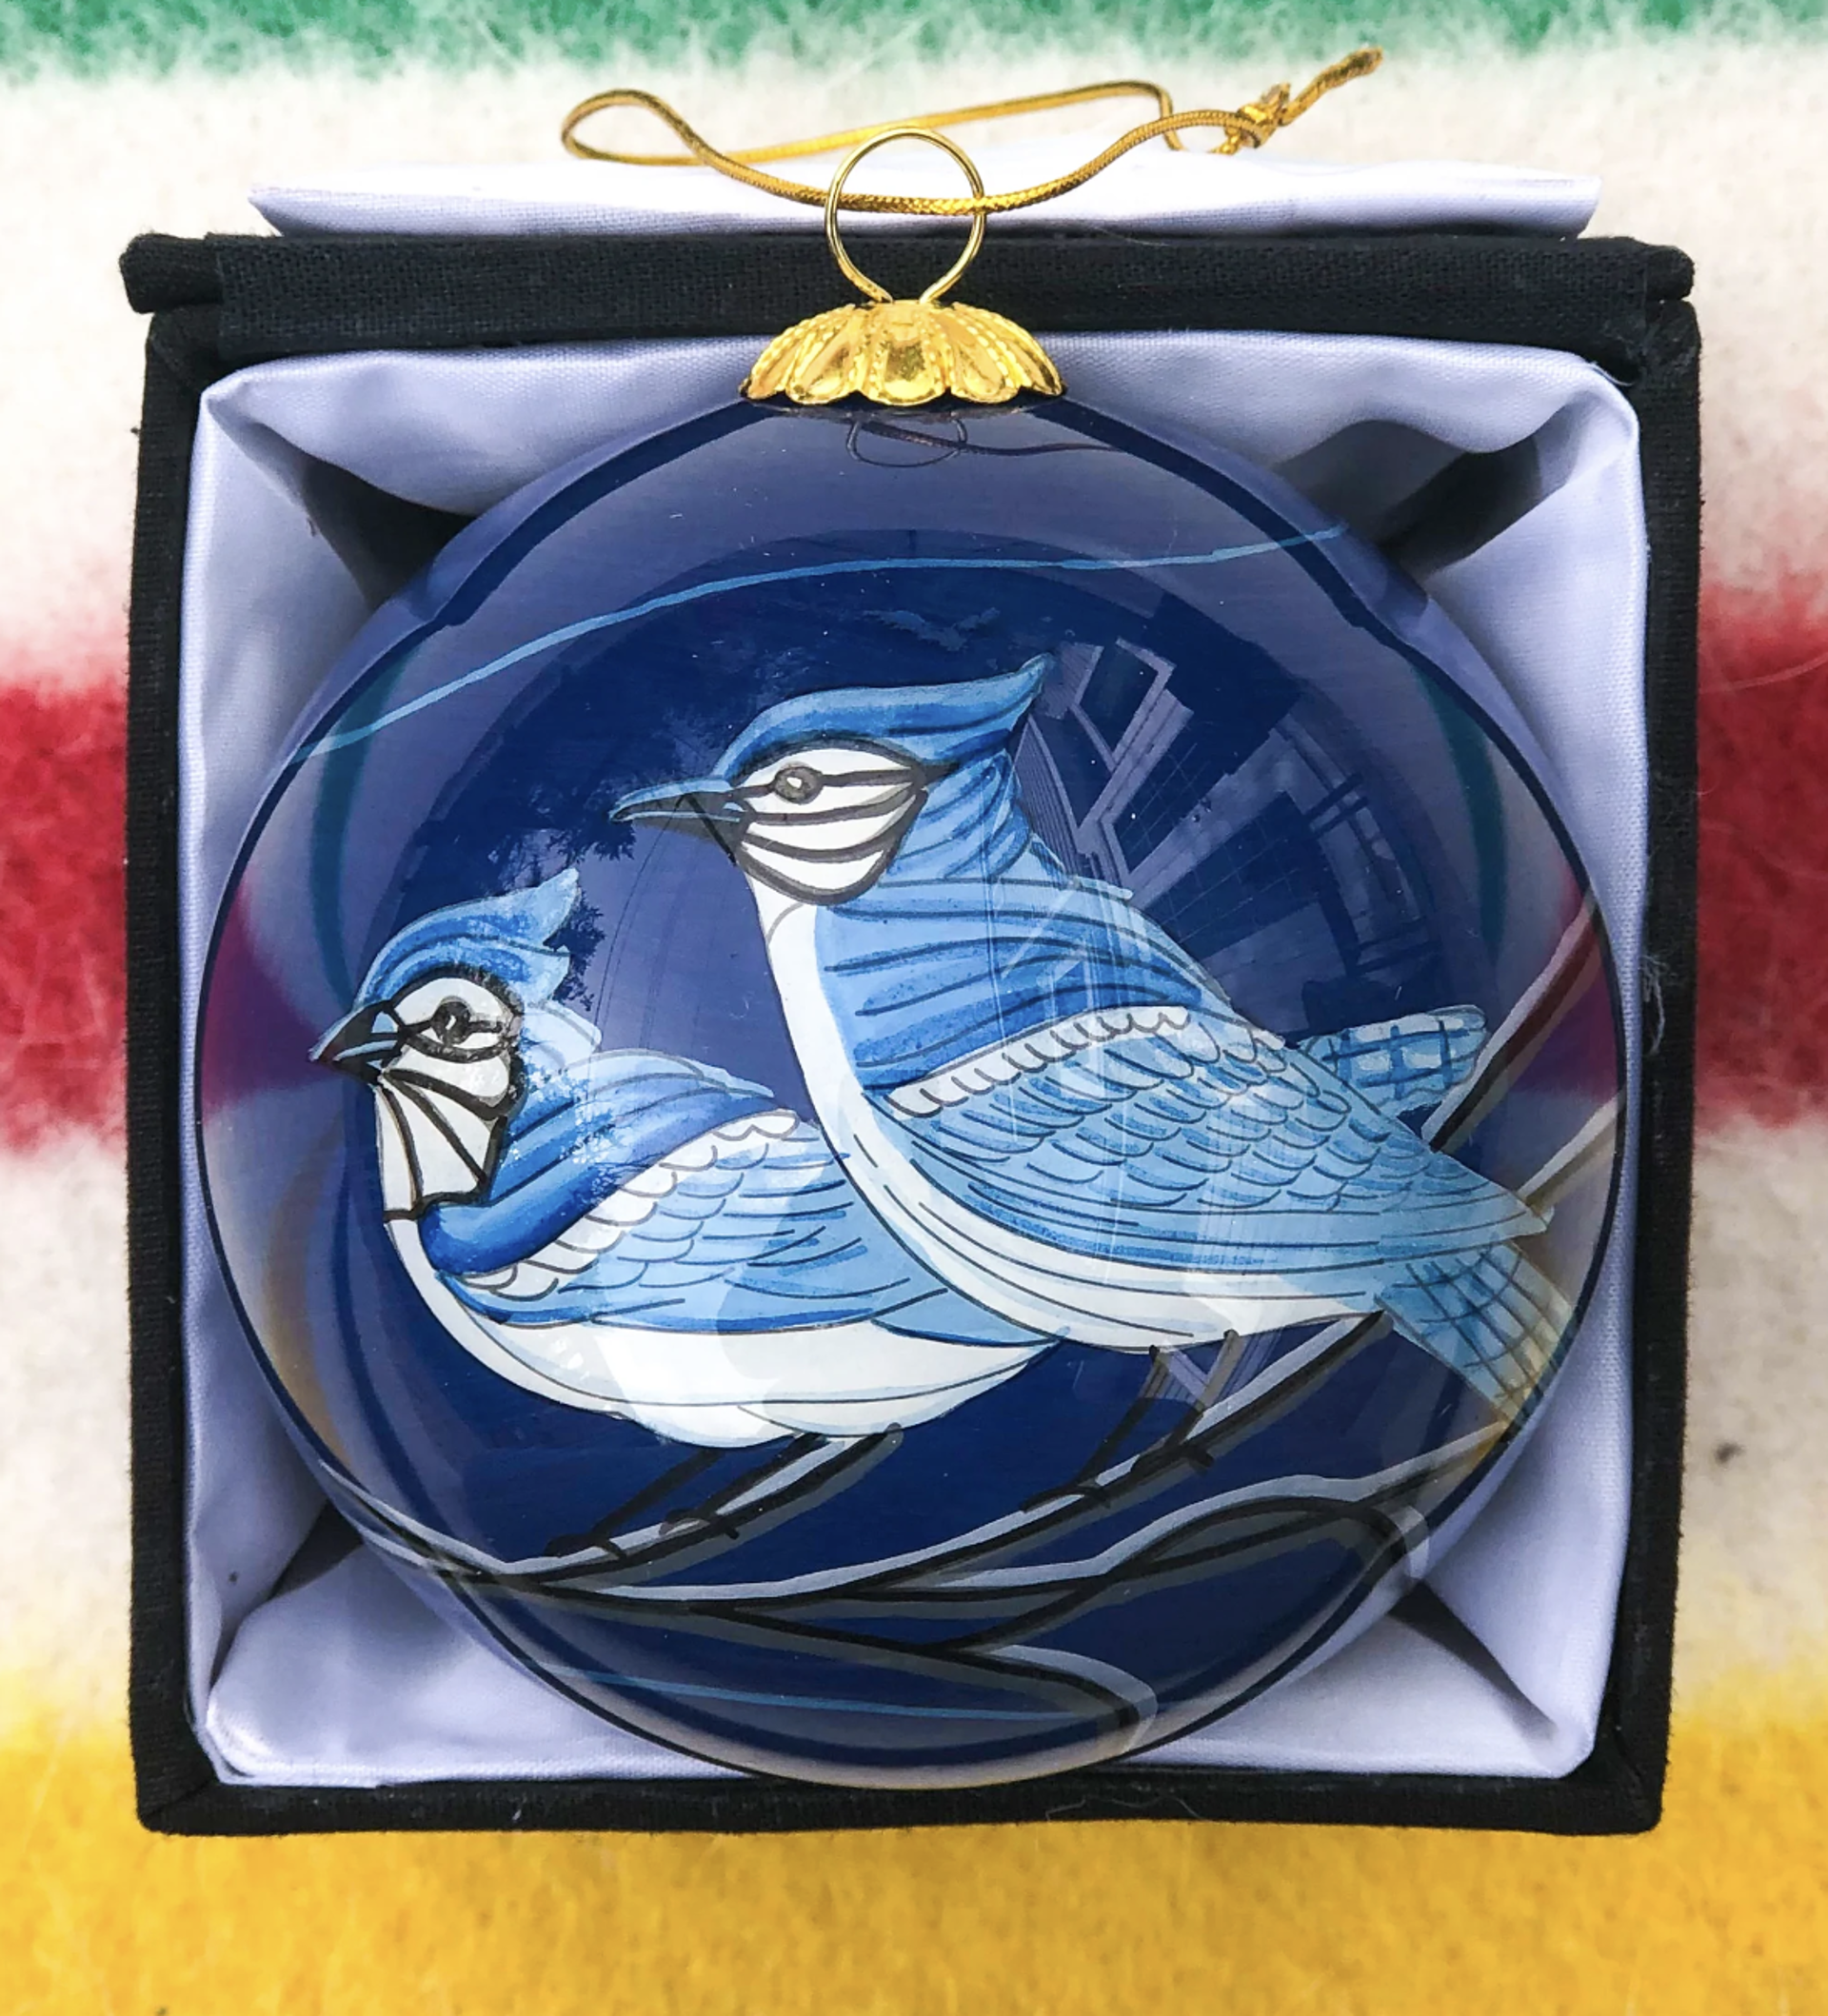 Jay Birds Ornament by Robbie Craig